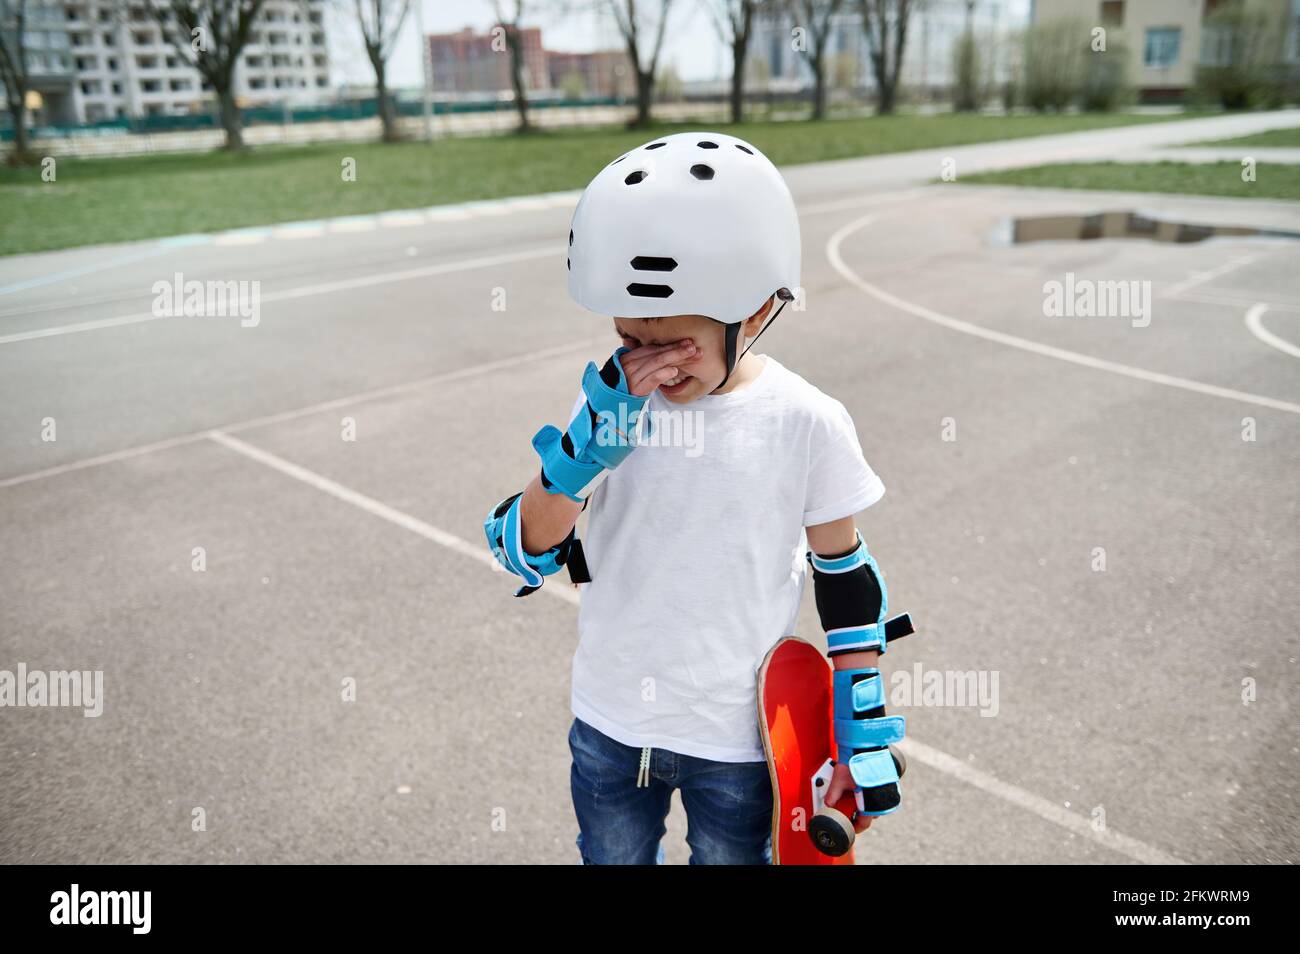 Verärgert Junge Skateboarder in Schutzkleidung frustriert wischt Tränen aus  Seine Augen und hält ein Skateboard in einer Hand, während Auf einem  Sportspieler stehen Stockfotografie - Alamy